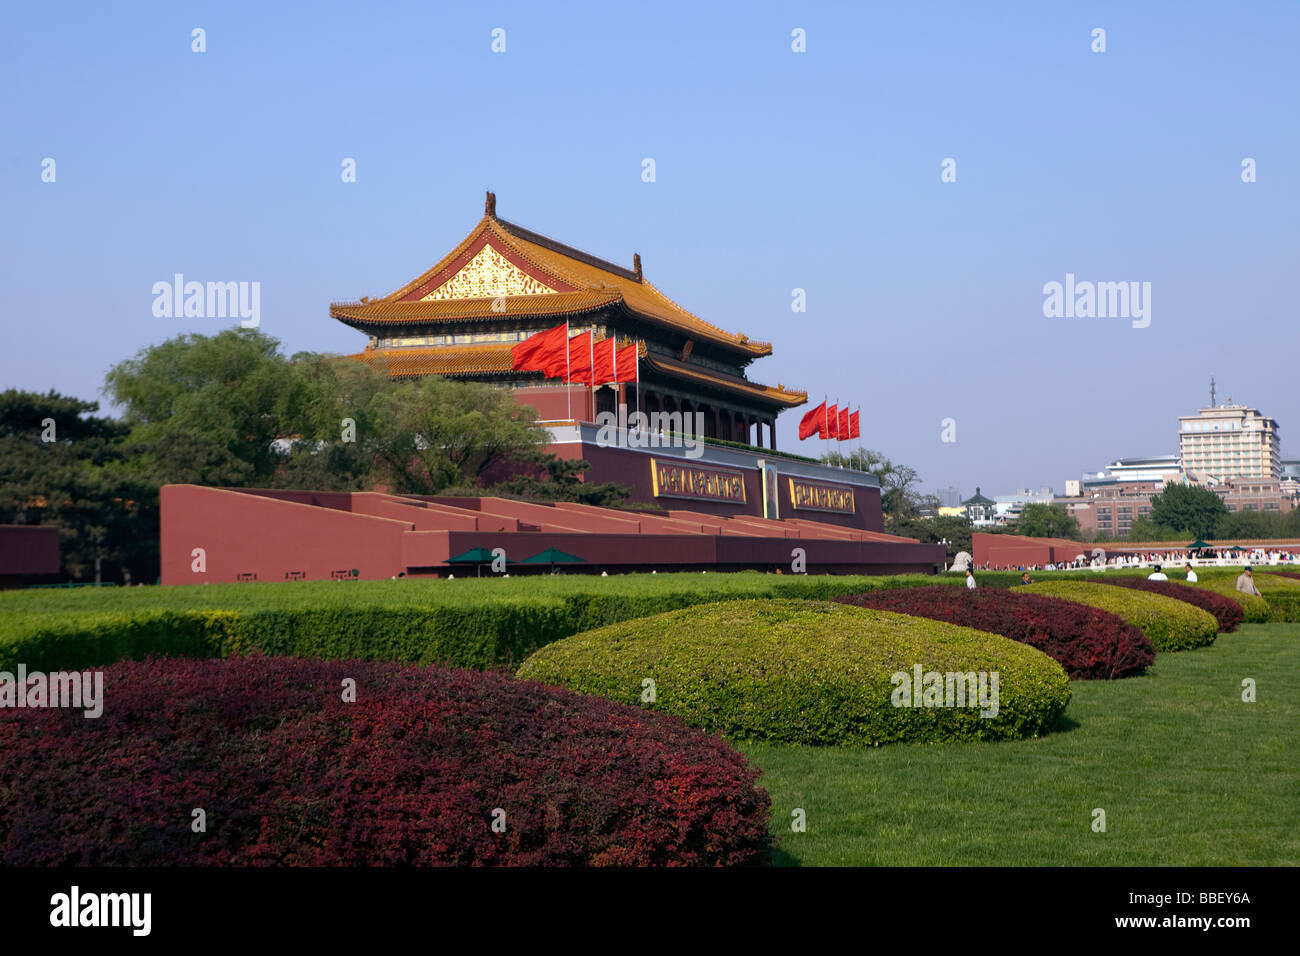 Porta di Tiananmen, la porta della pace celeste, è visto a Pechino in Cina Foto Stock